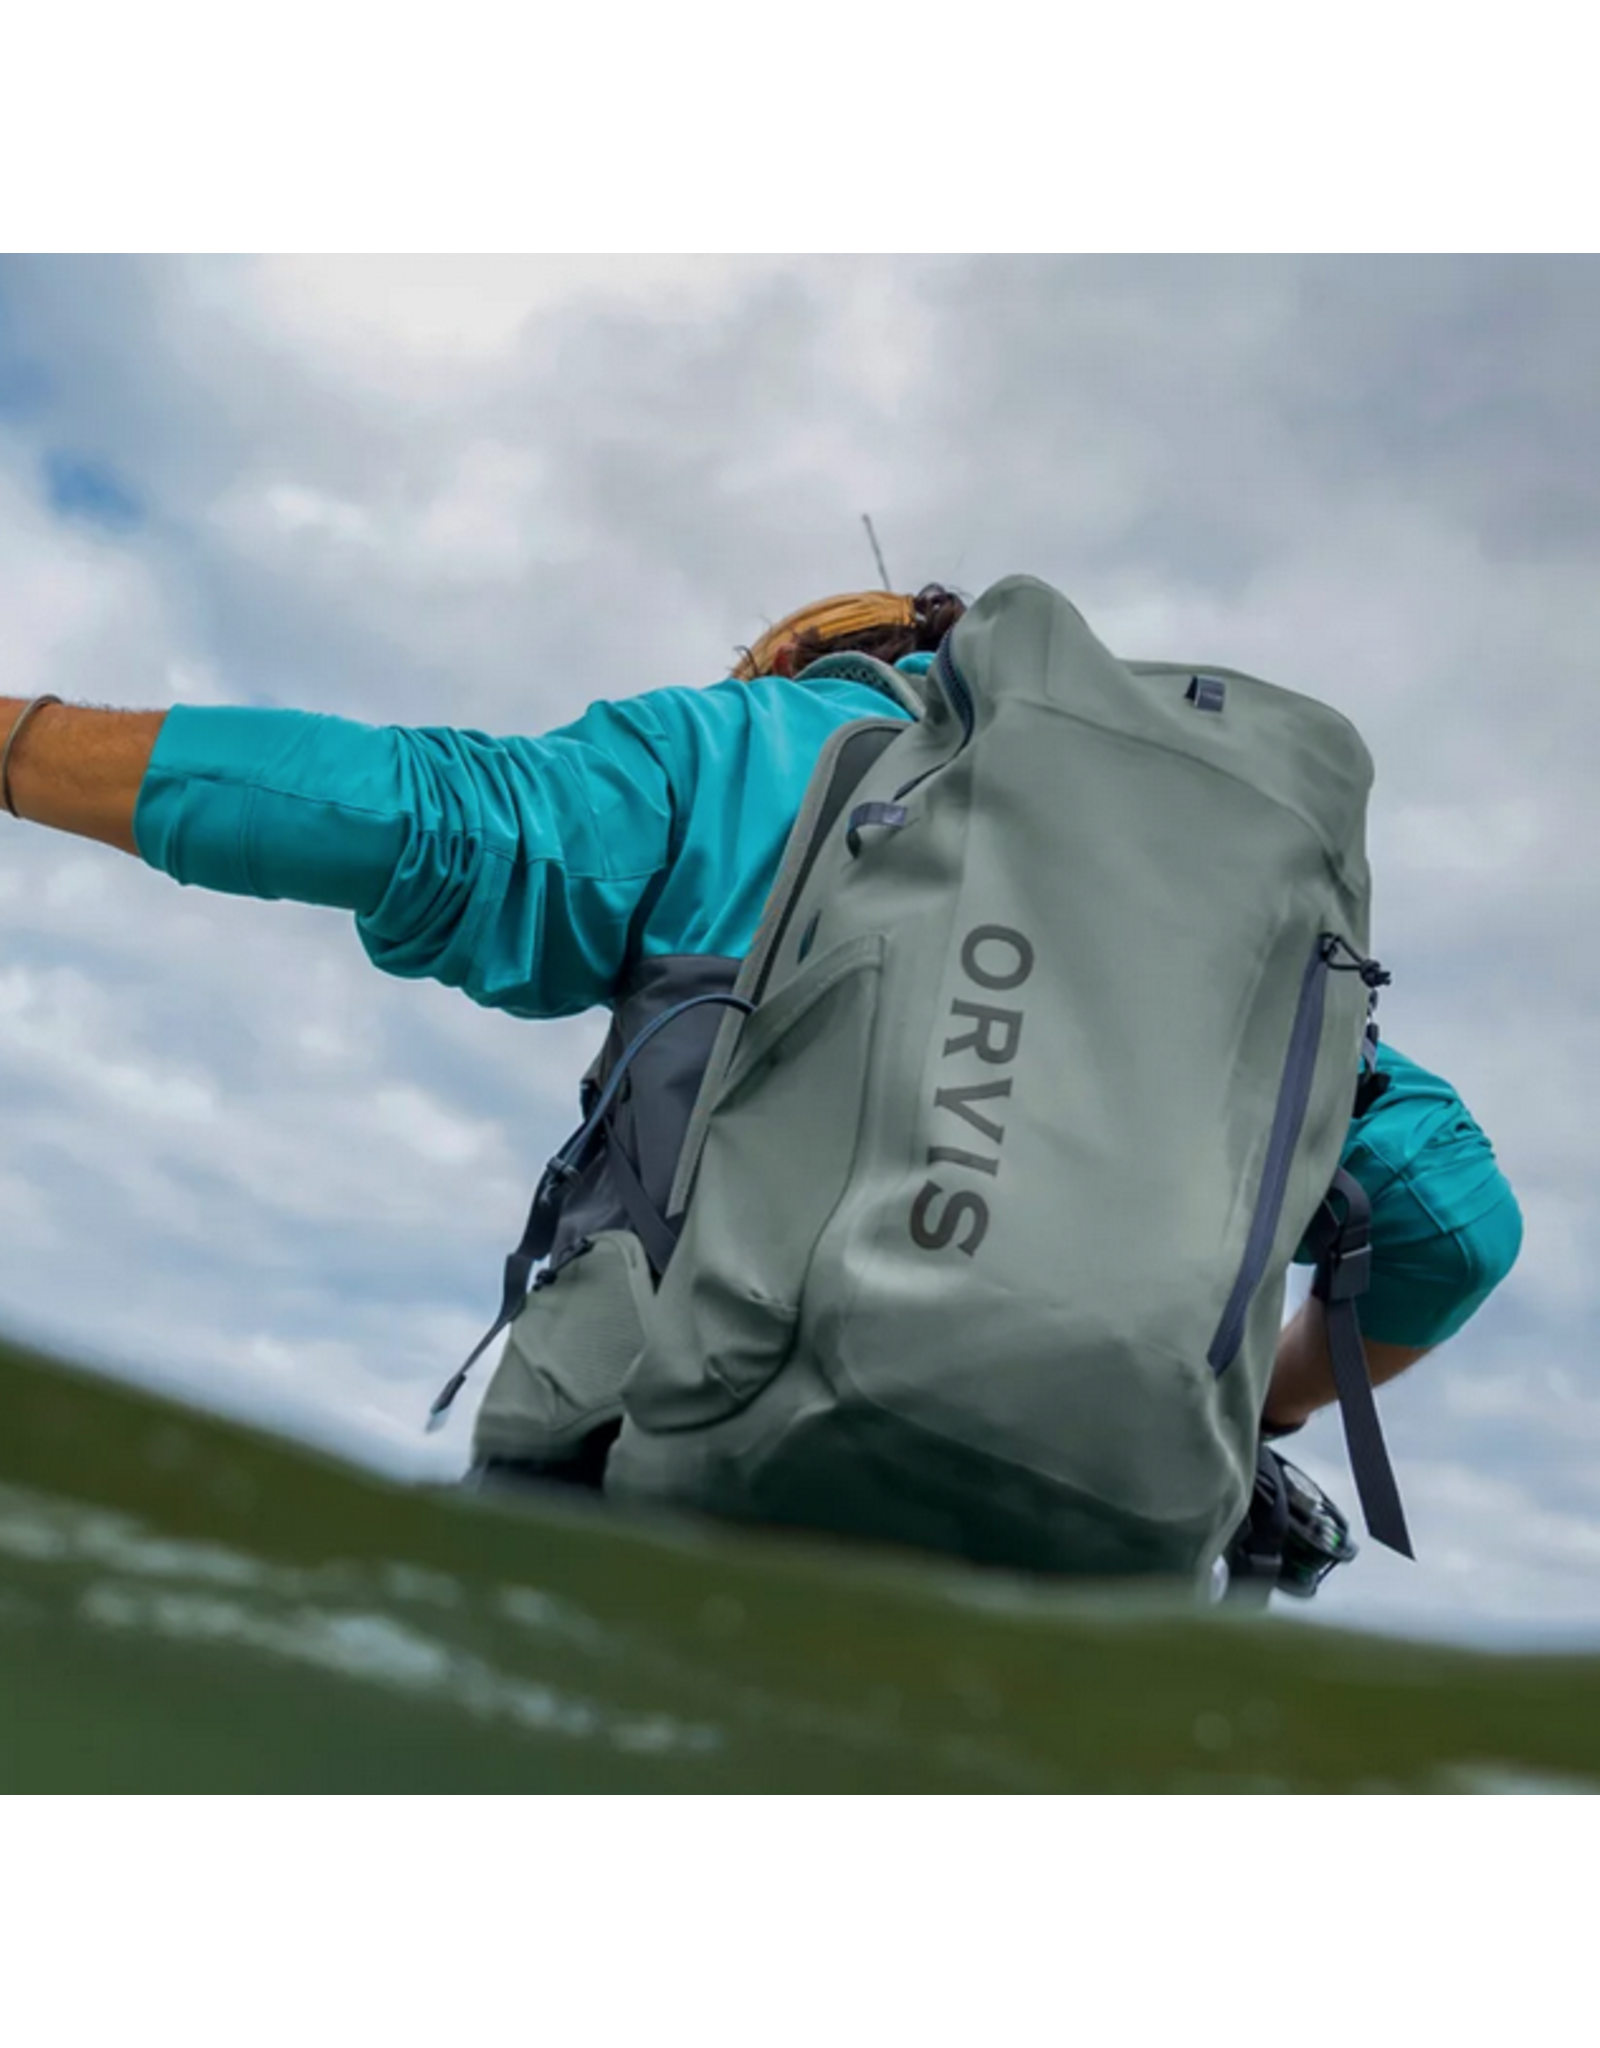 Orvis ORVIS PRO Waterproof Backpack 30L (Cloudburst)